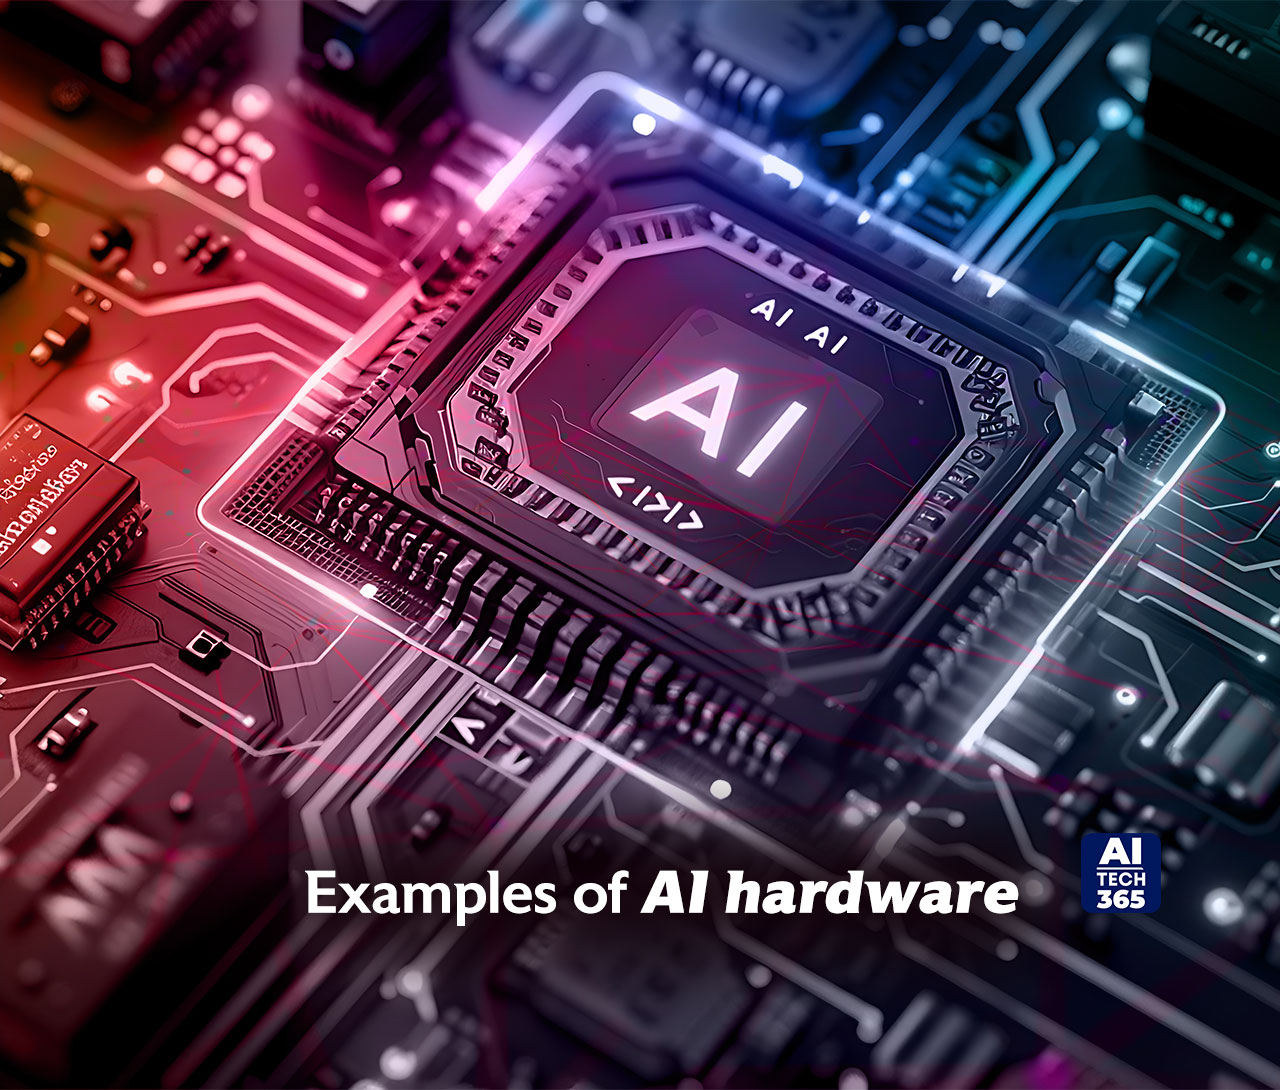 AI hardware